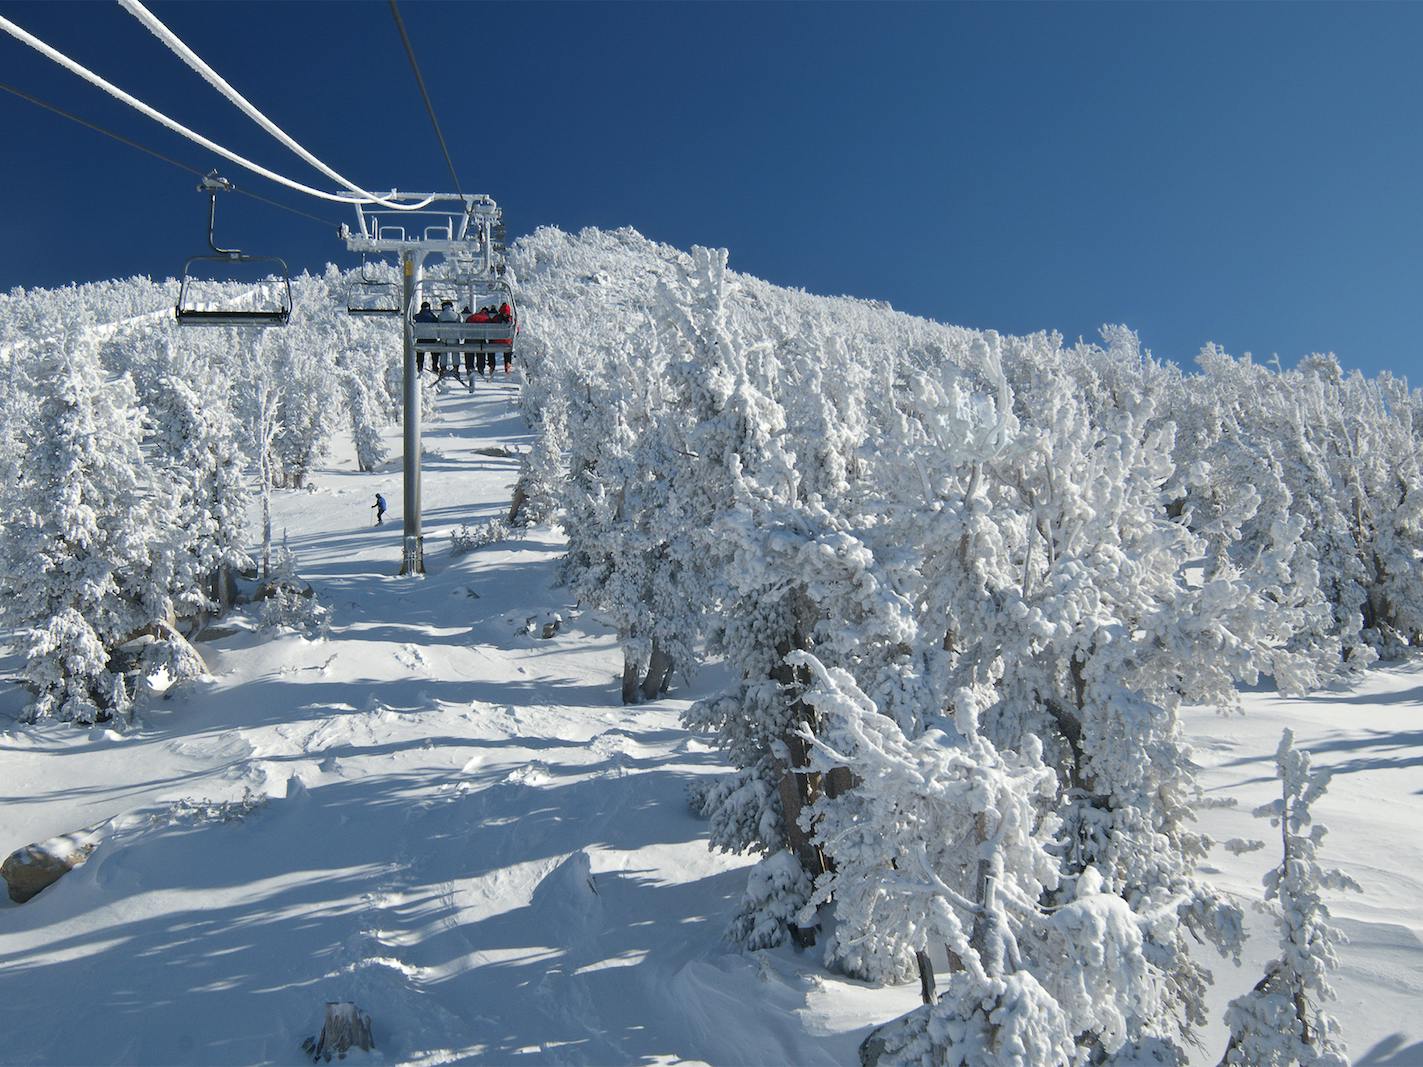 Ski lift in Tahoe